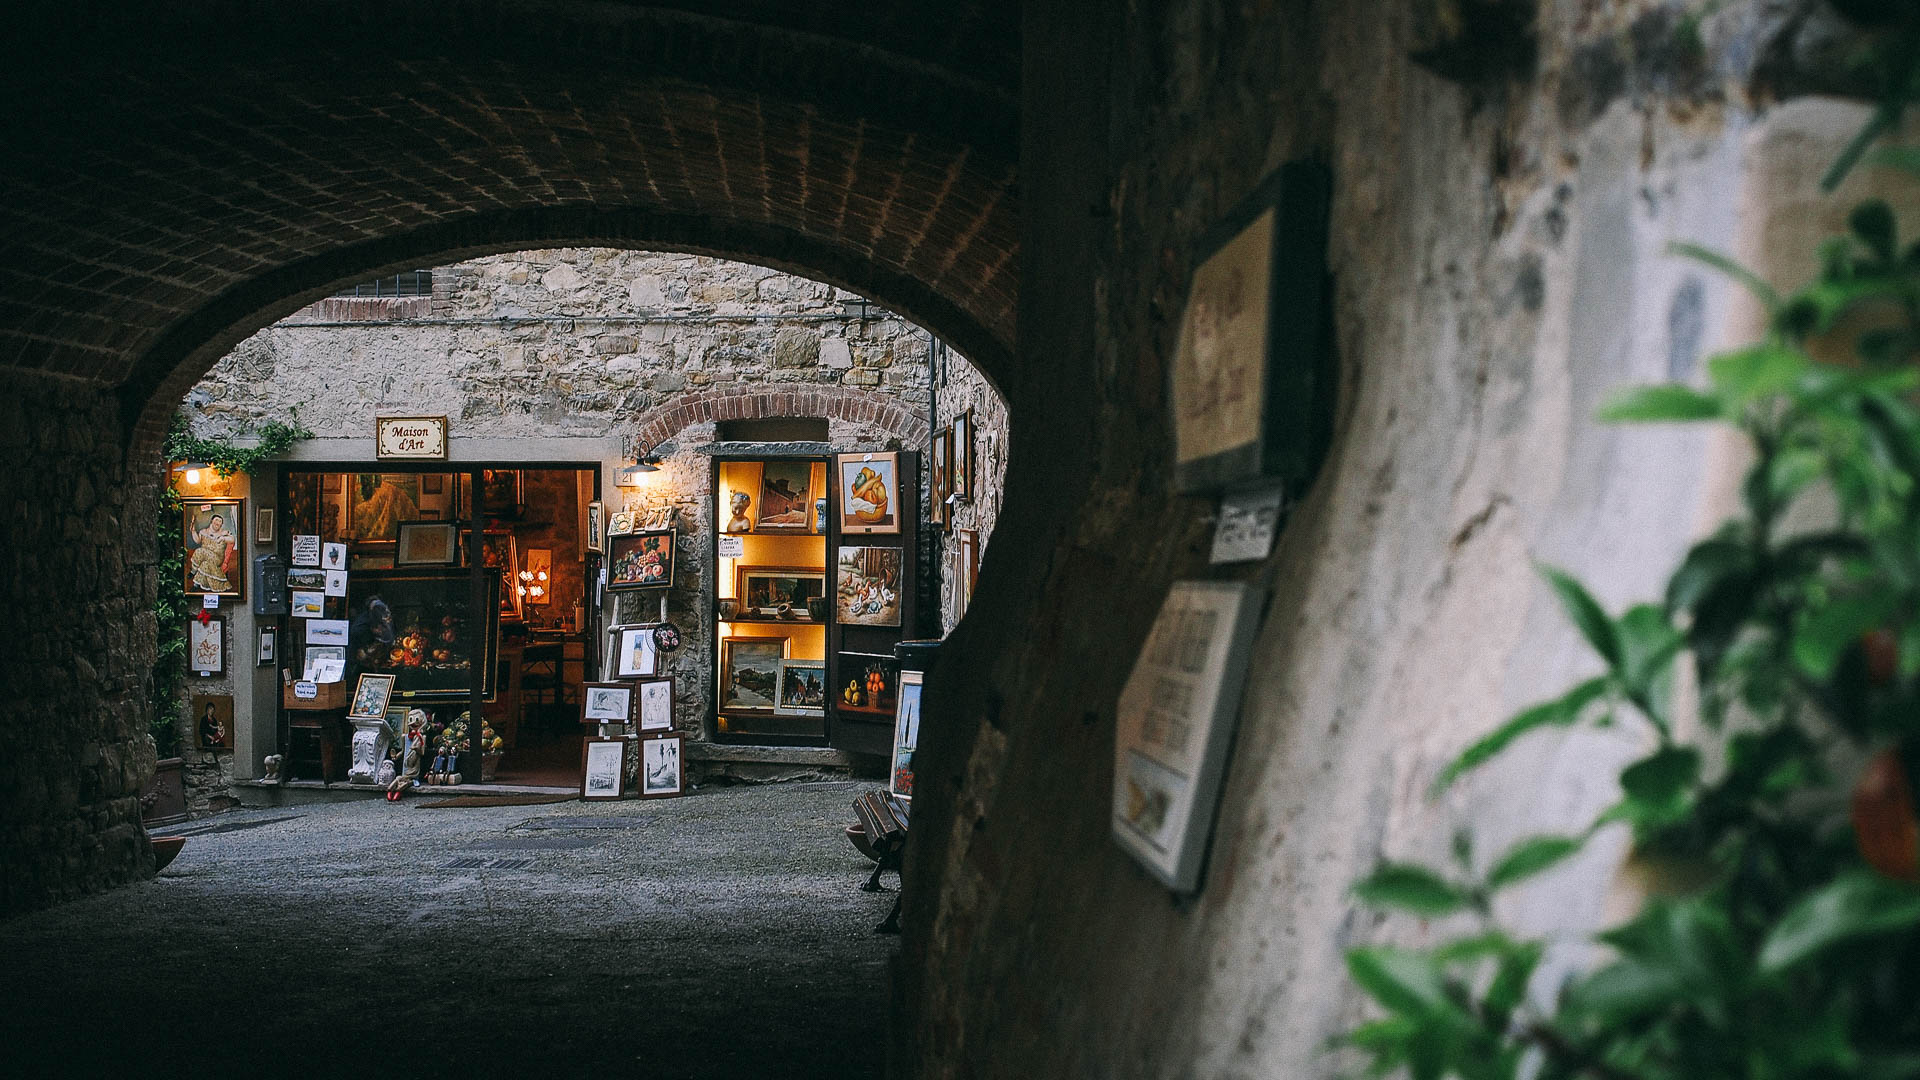 Chianti, Tuscany, Italy|klyuen travel photography